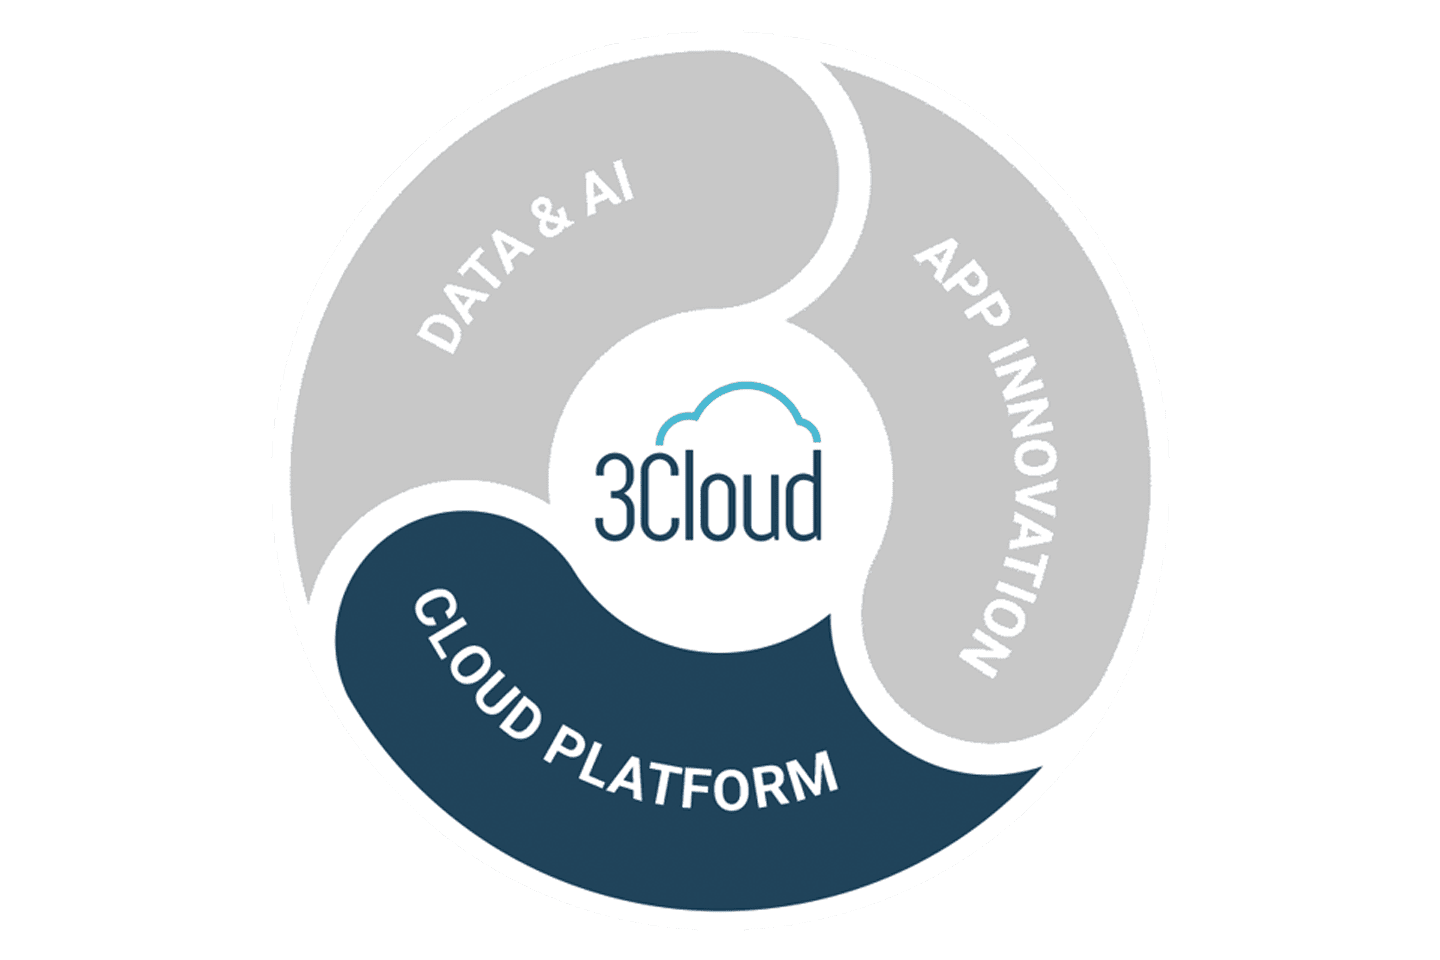 3Cloud Cloud Platform